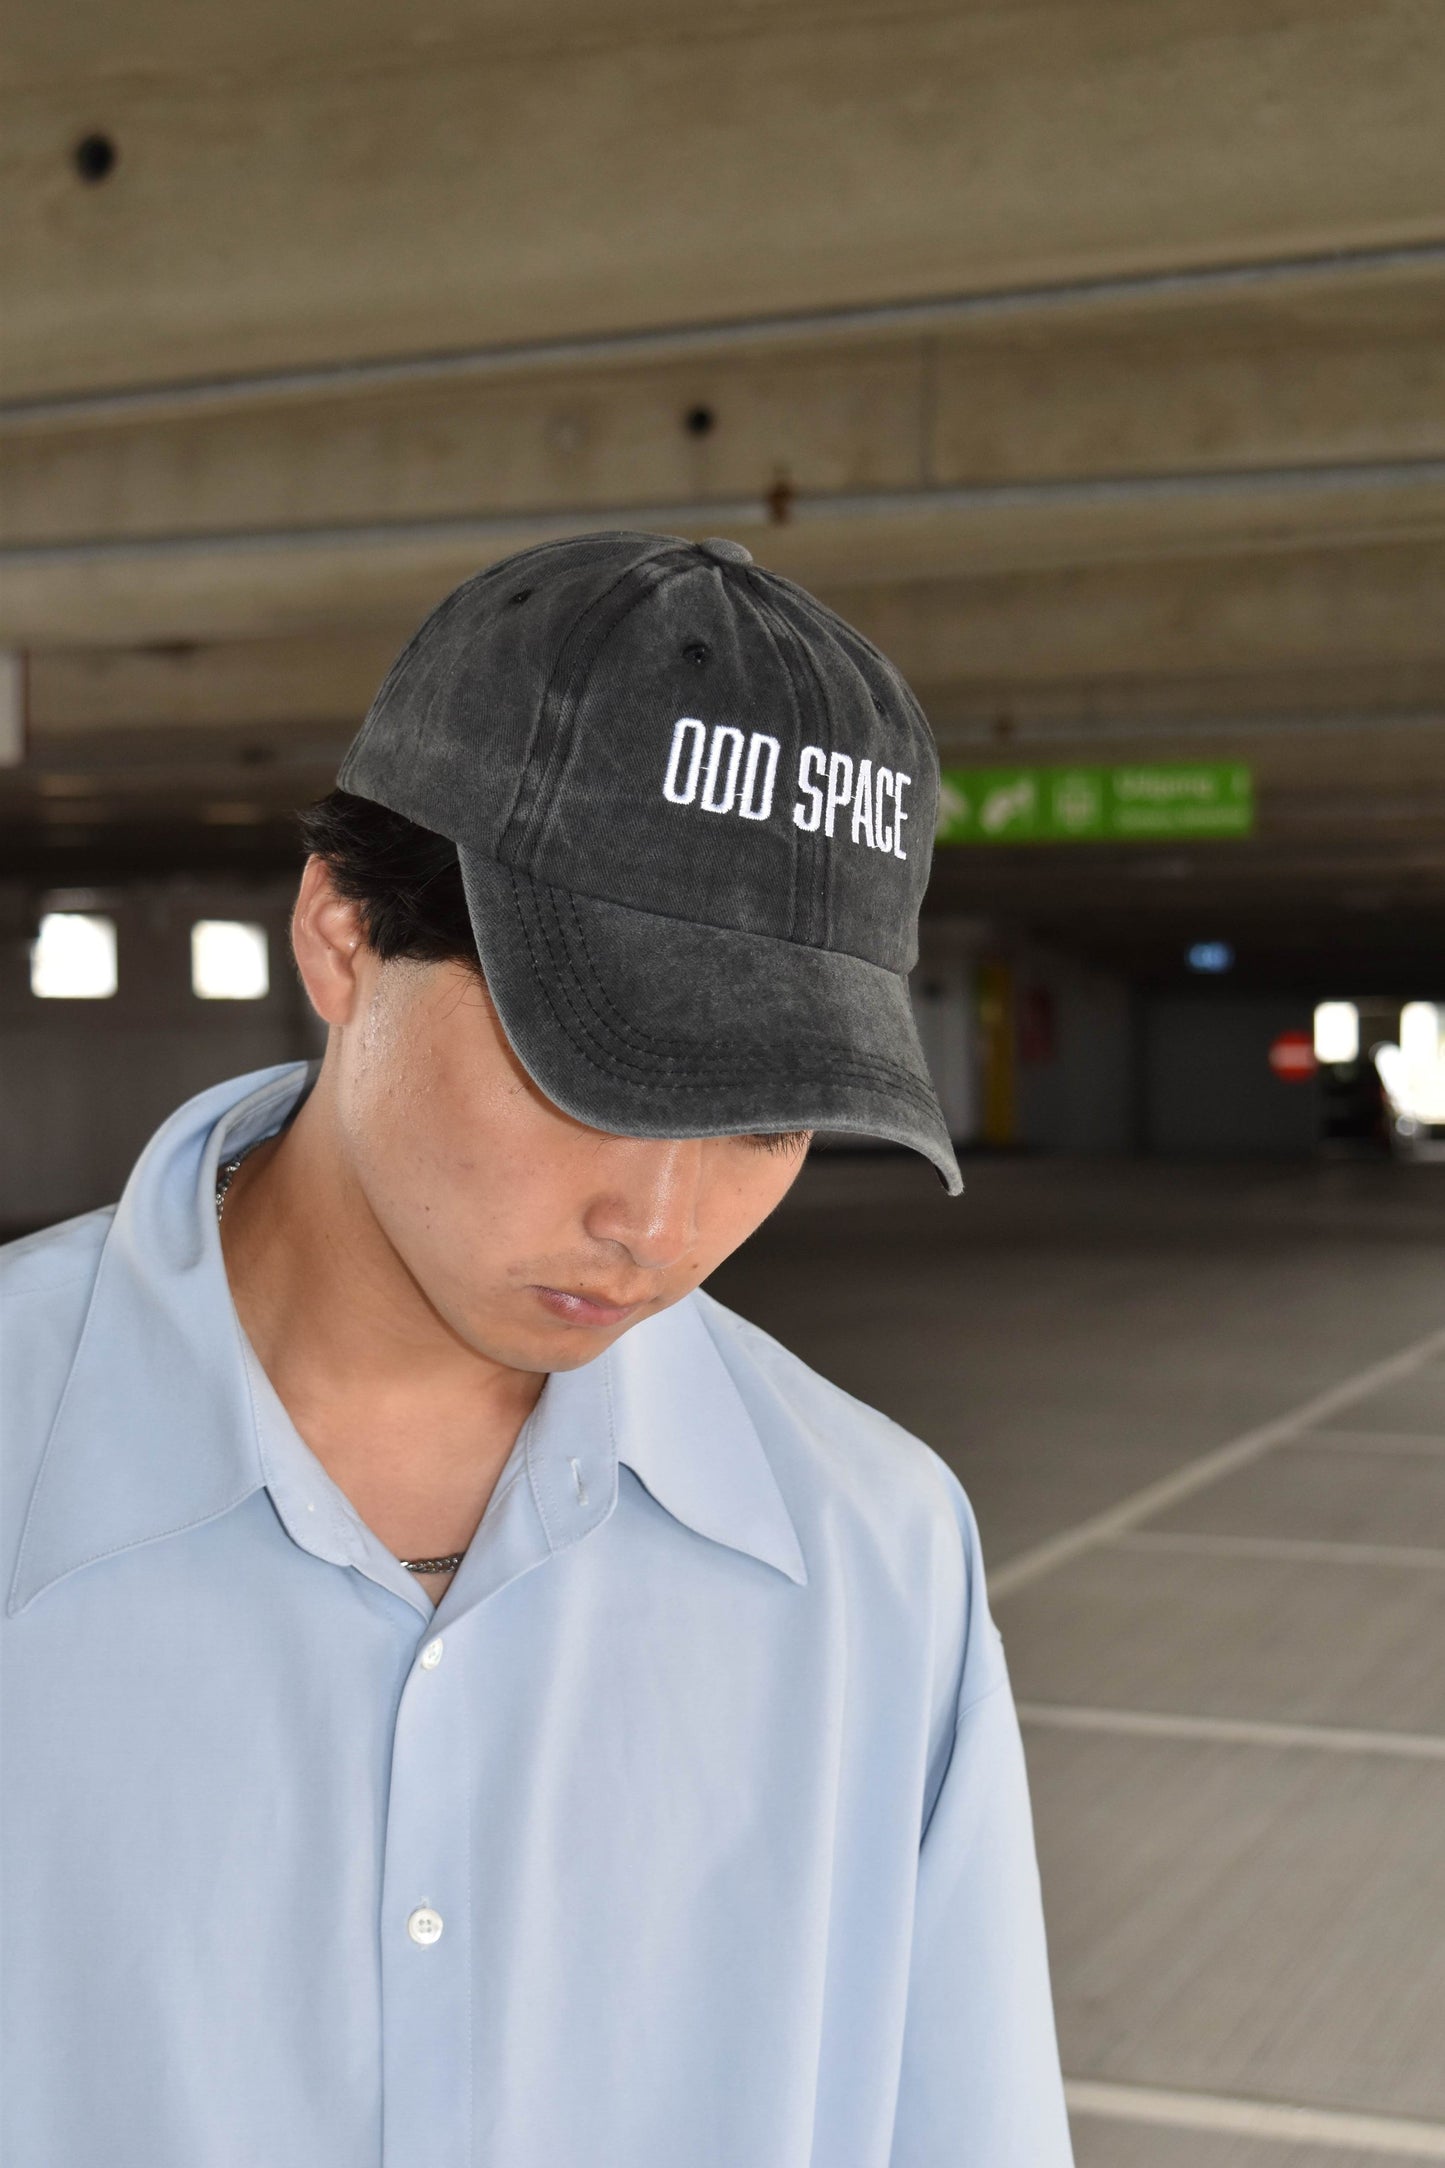 ODD SPACE cap